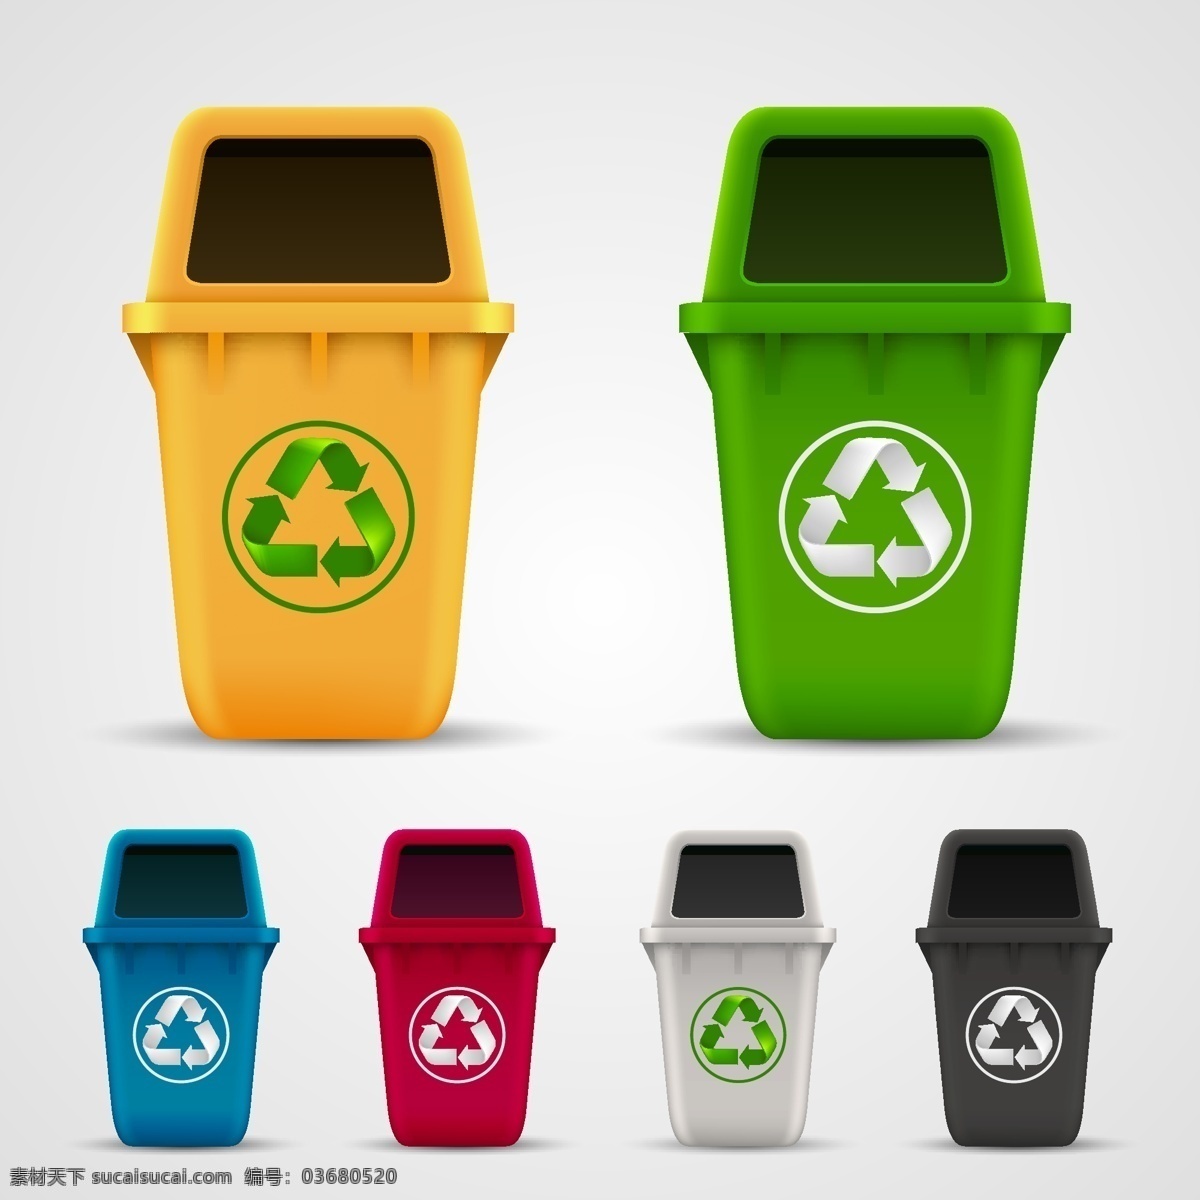 立体 垃圾桶 图案 可回收图标 彩色垃圾桶 垃圾桶图标 卡通垃圾桶 矢量垃圾桶 环保主题 生活百科 矢量素材 白色